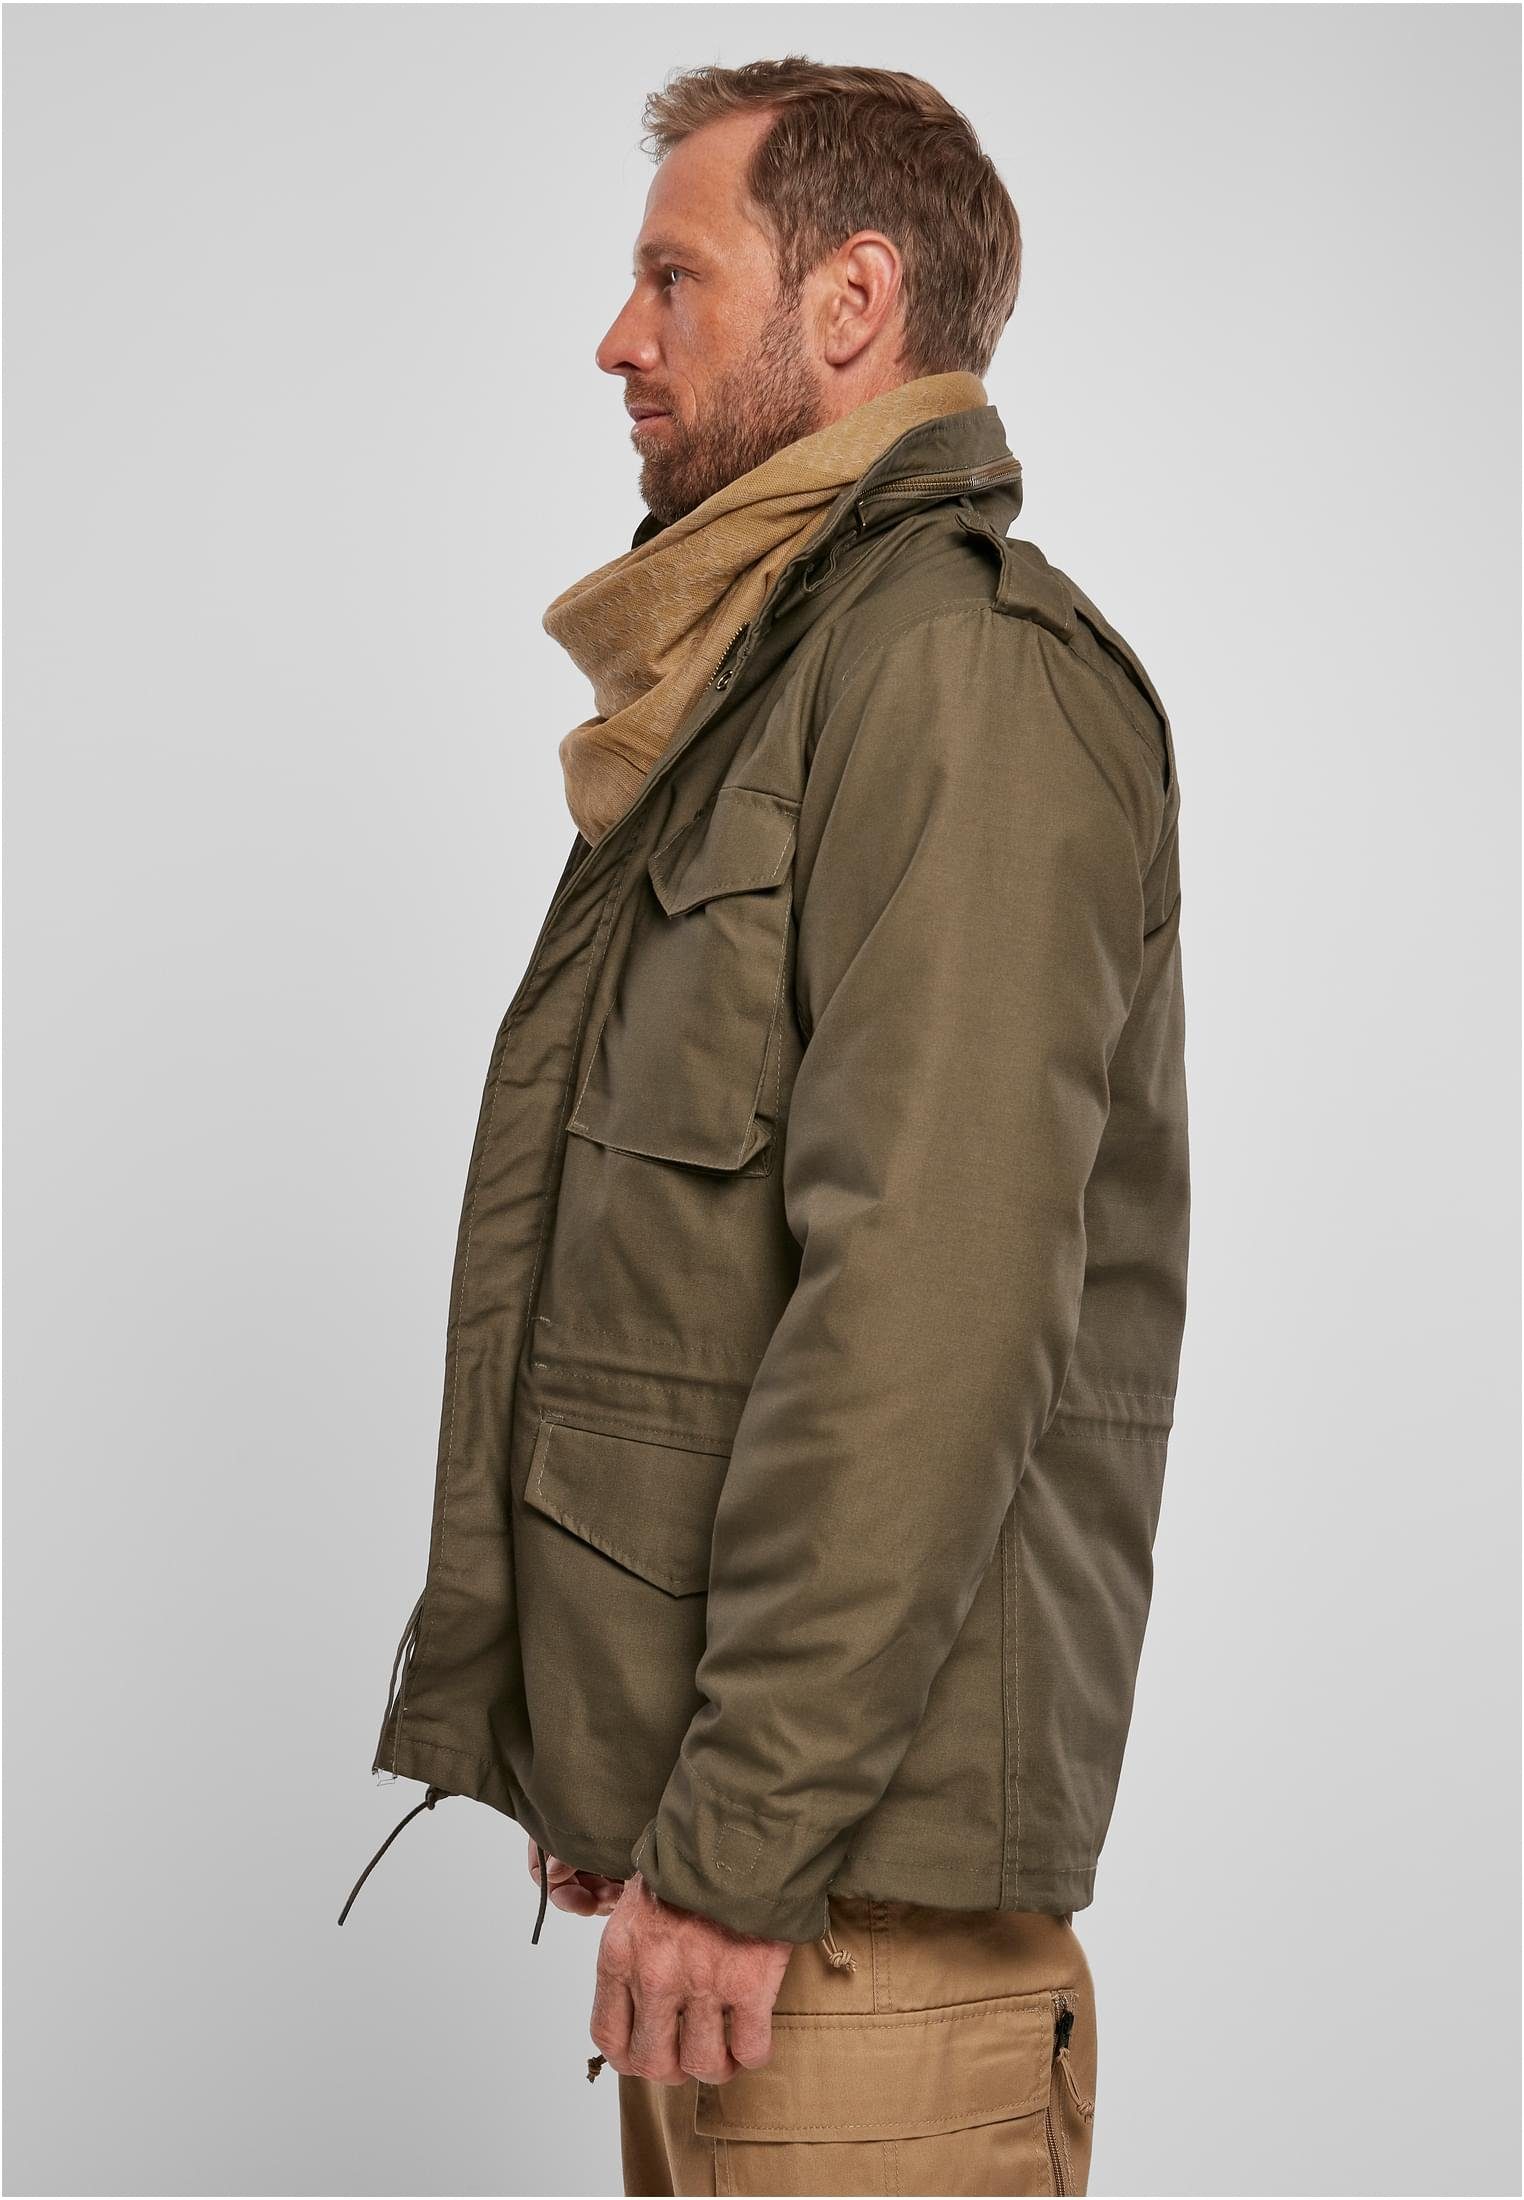 Herren M-65 olive Field Jacket Wintermantel Brandit